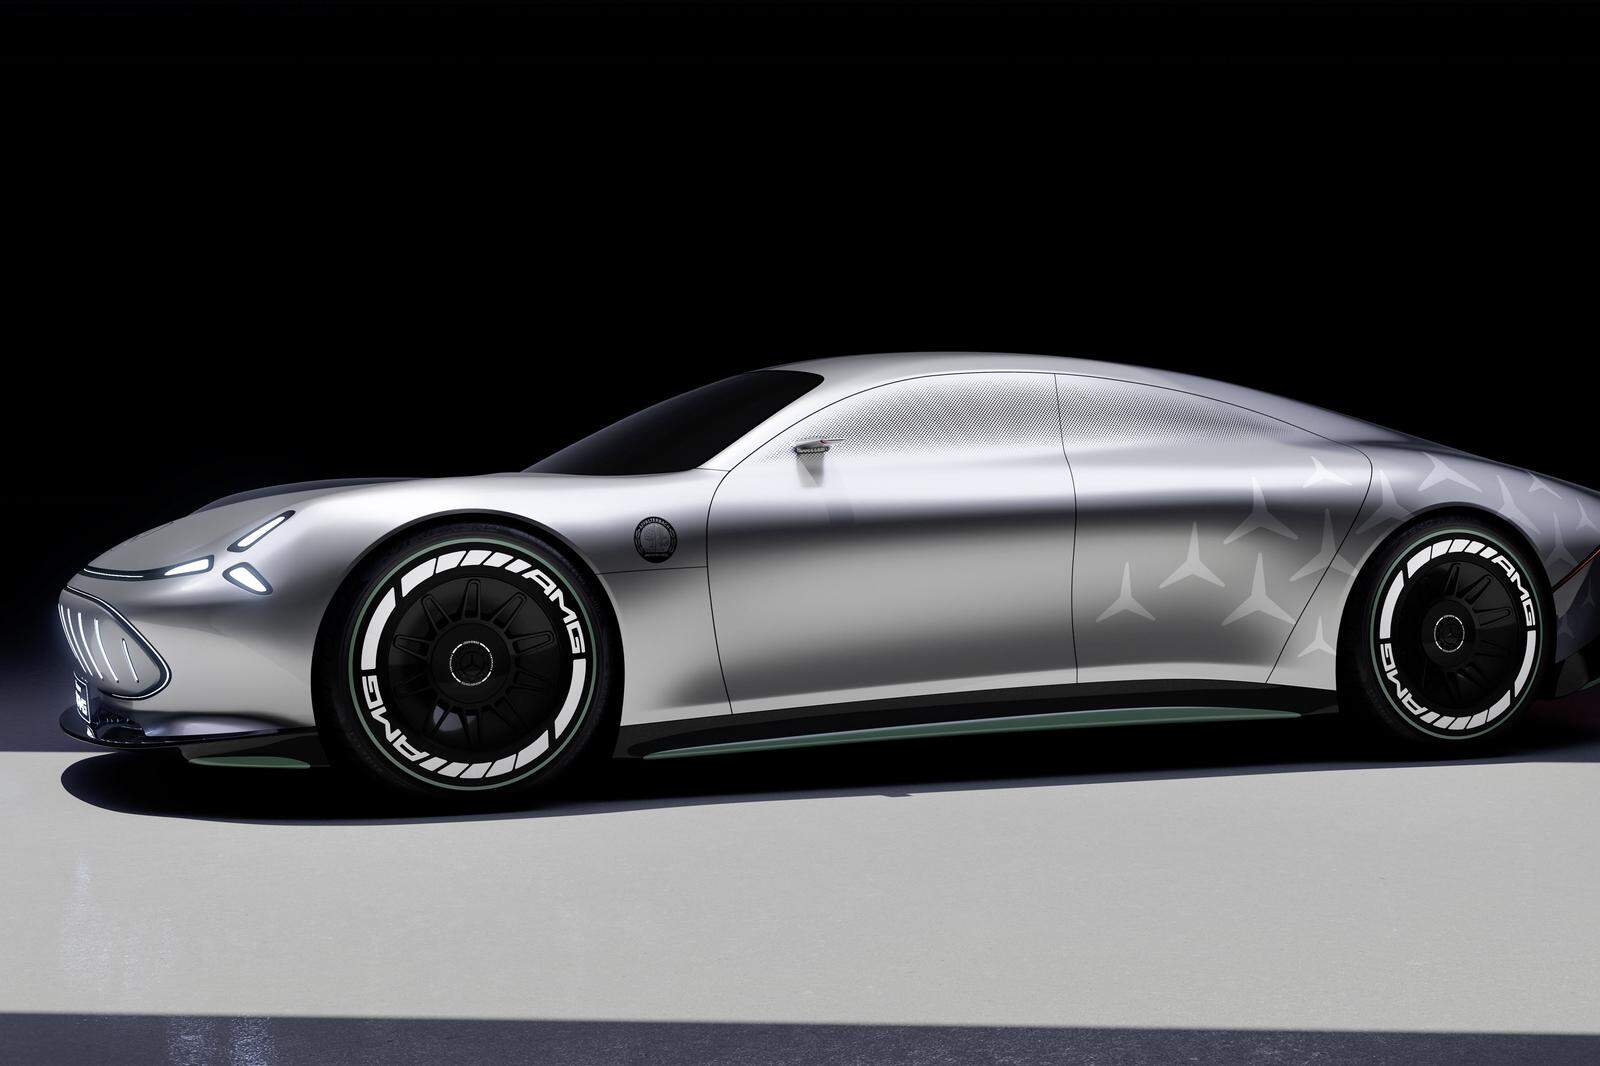 Das Showcar Vision AMG gibt Ausblick auf einen Elektro-Sportwagen